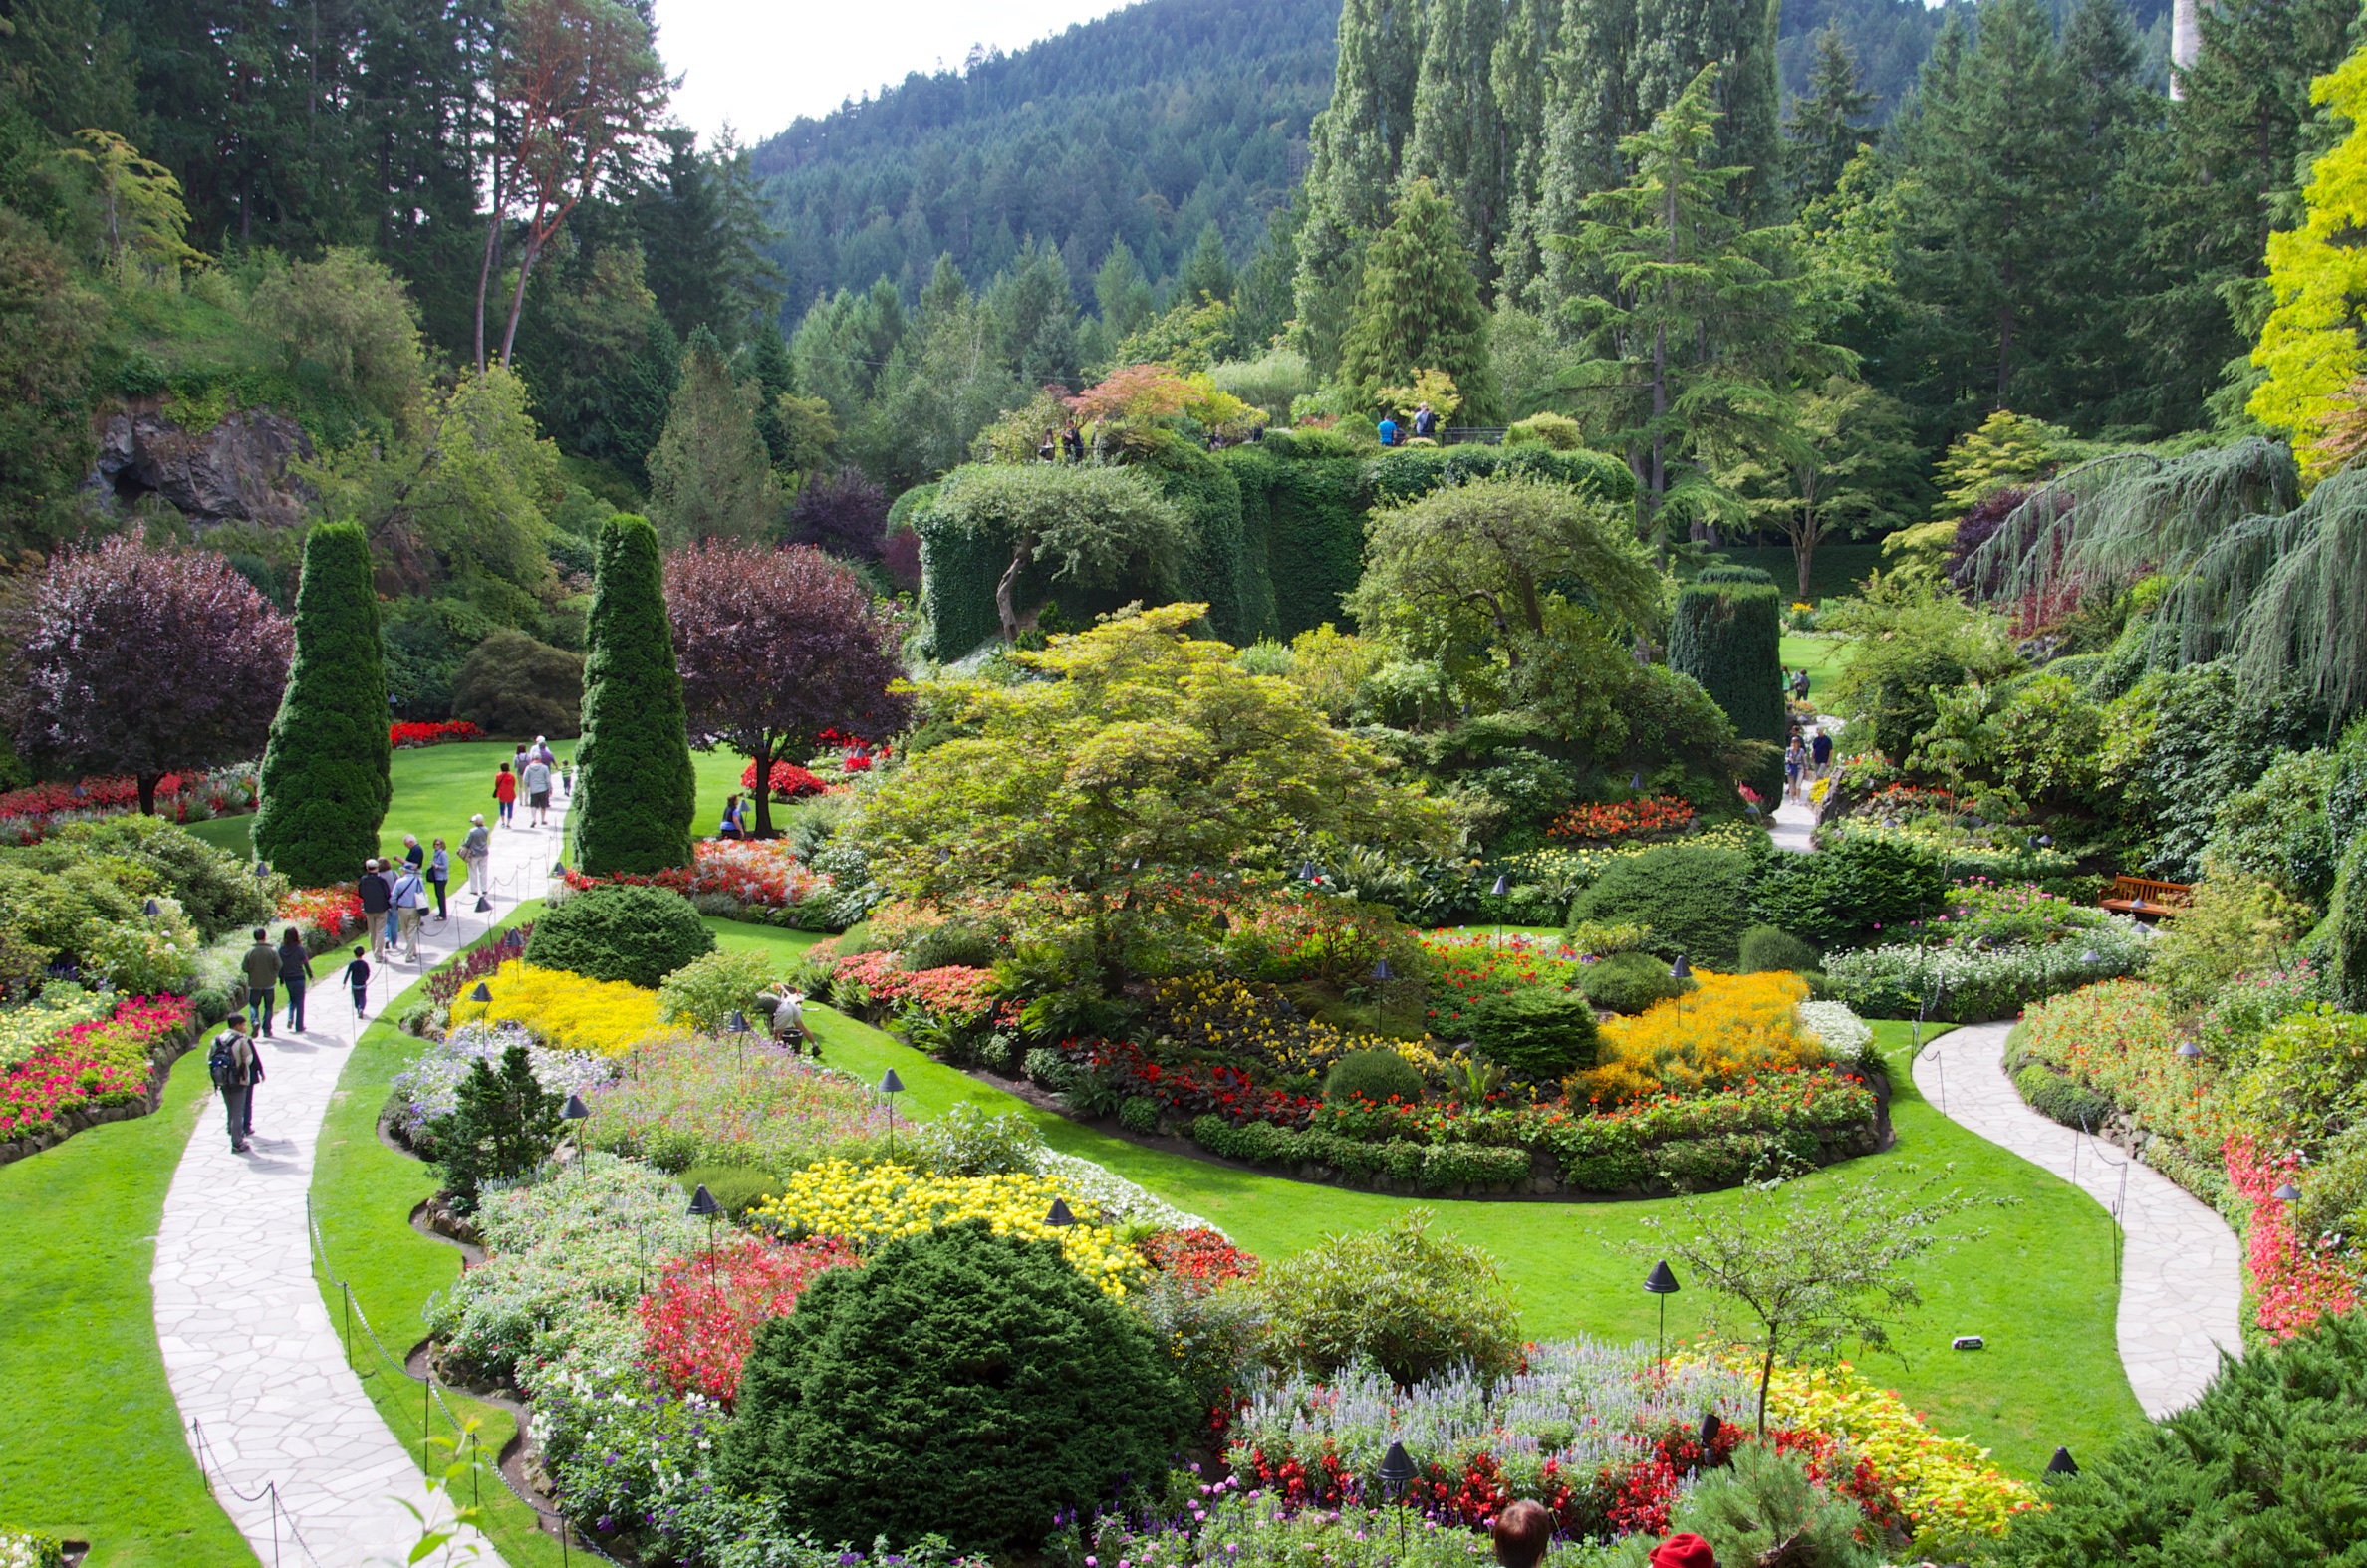  Sunken Garden, Butchart Gardens, Vancouver Island, Canada 